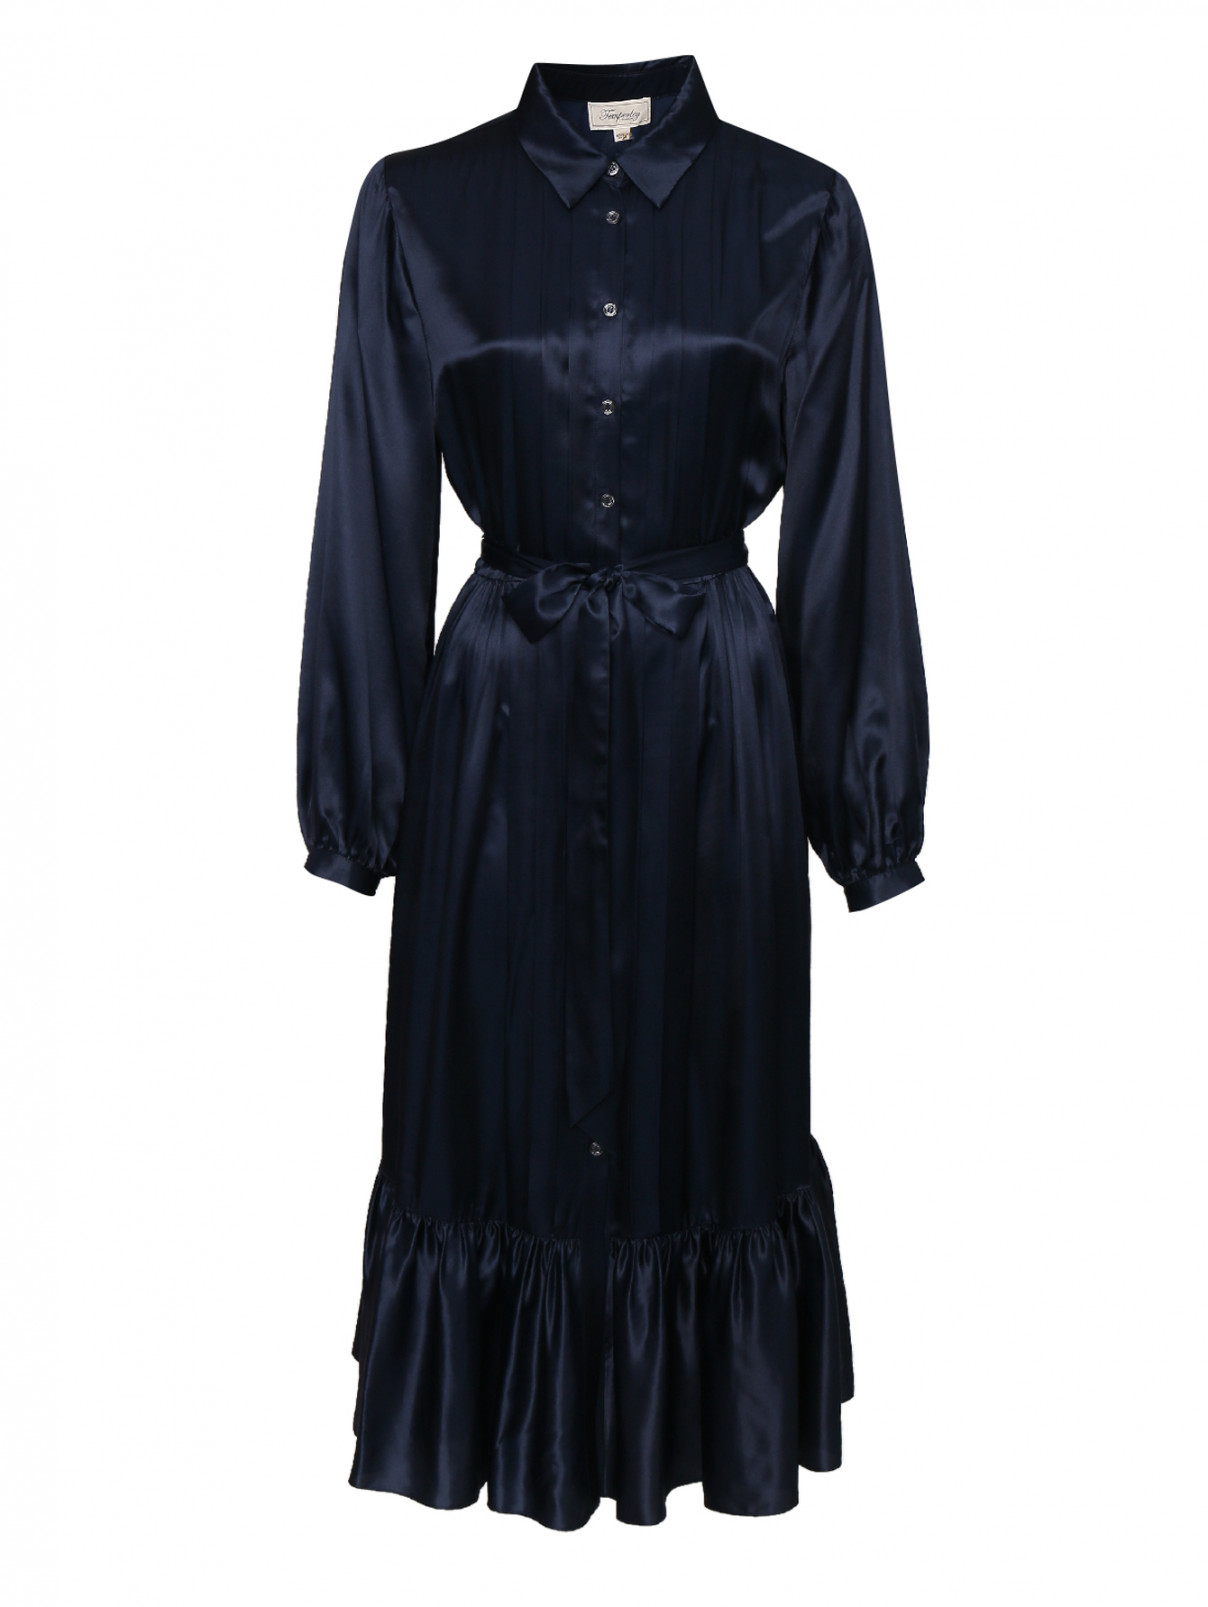 платье на пуговицах из вискозы и шелка Temperley London  –  Общий вид  – Цвет:  Синий